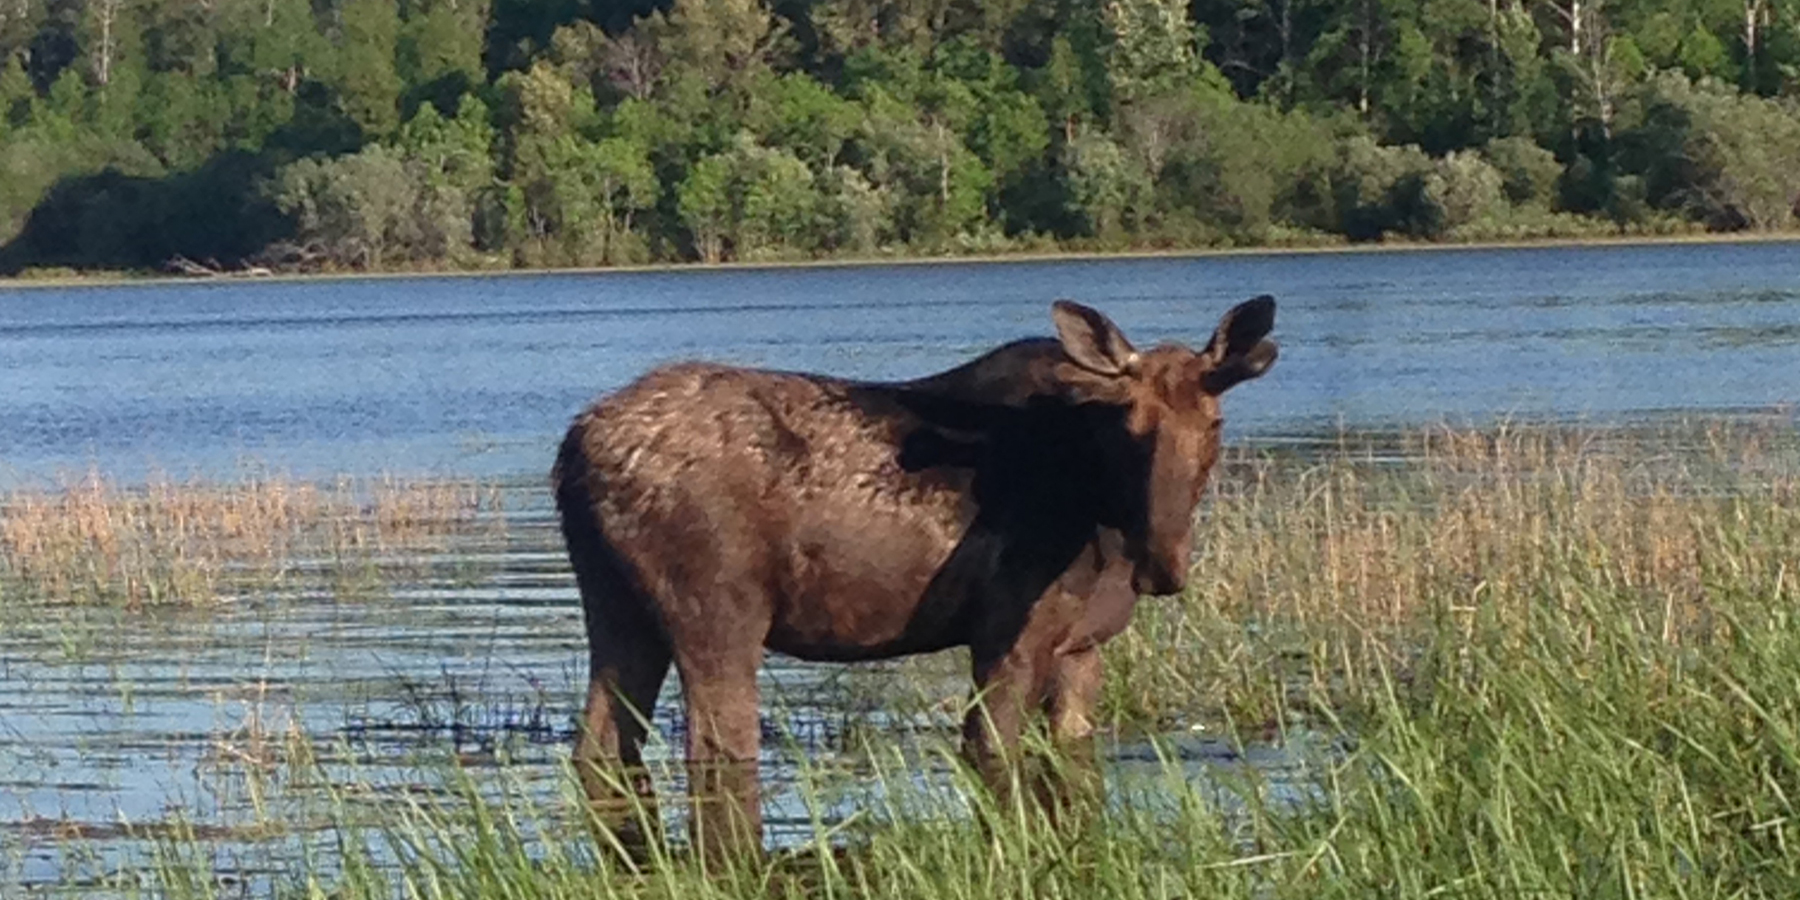 Moose hunting at Kaby Lodge